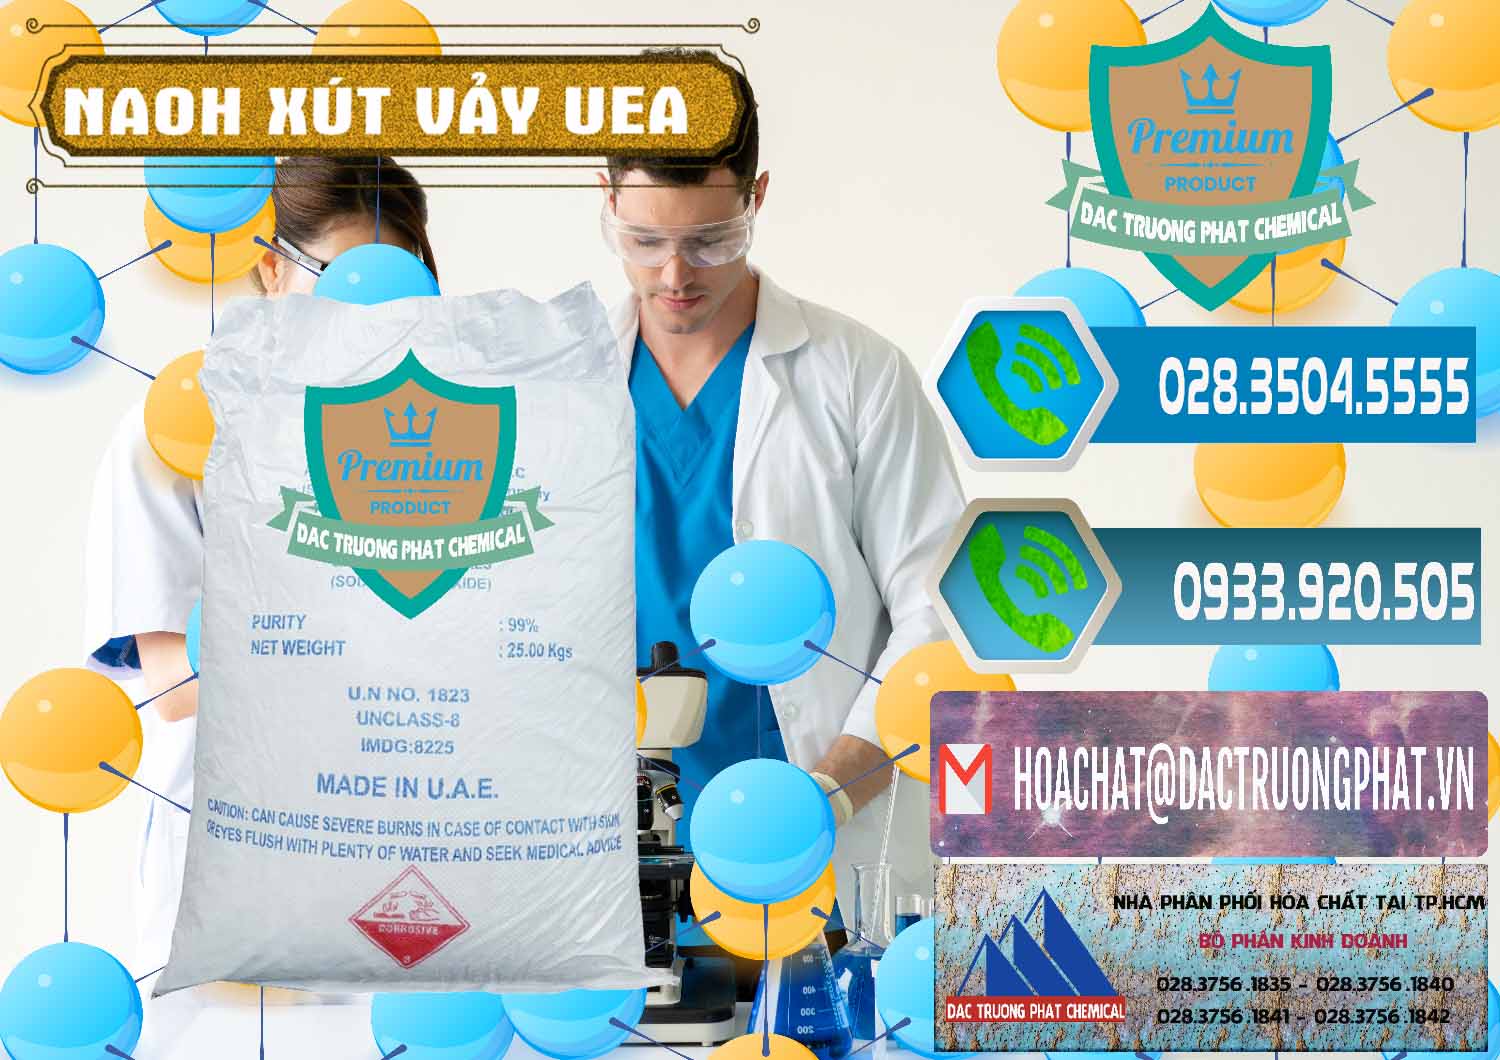 Cty chuyên bán _ cung ứng Xút Vảy - NaOH Vảy UAE Iran - 0432 - Nơi chuyên cung cấp - kinh doanh hóa chất tại TP.HCM - congtyhoachat.net